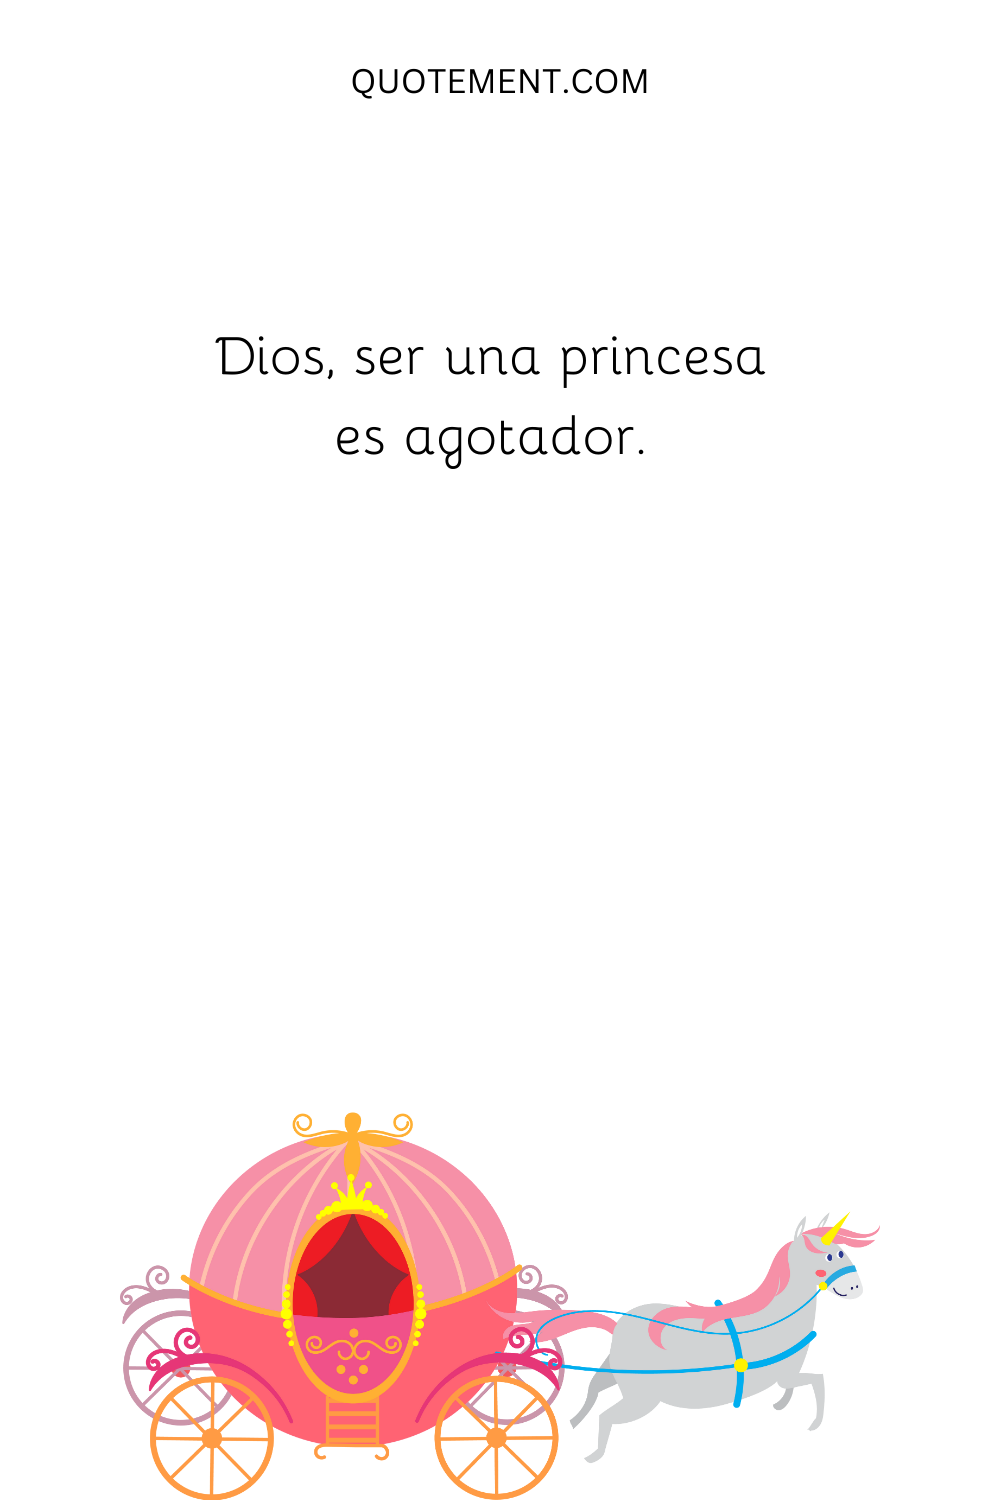 Dios, ser una princesa es agotador.